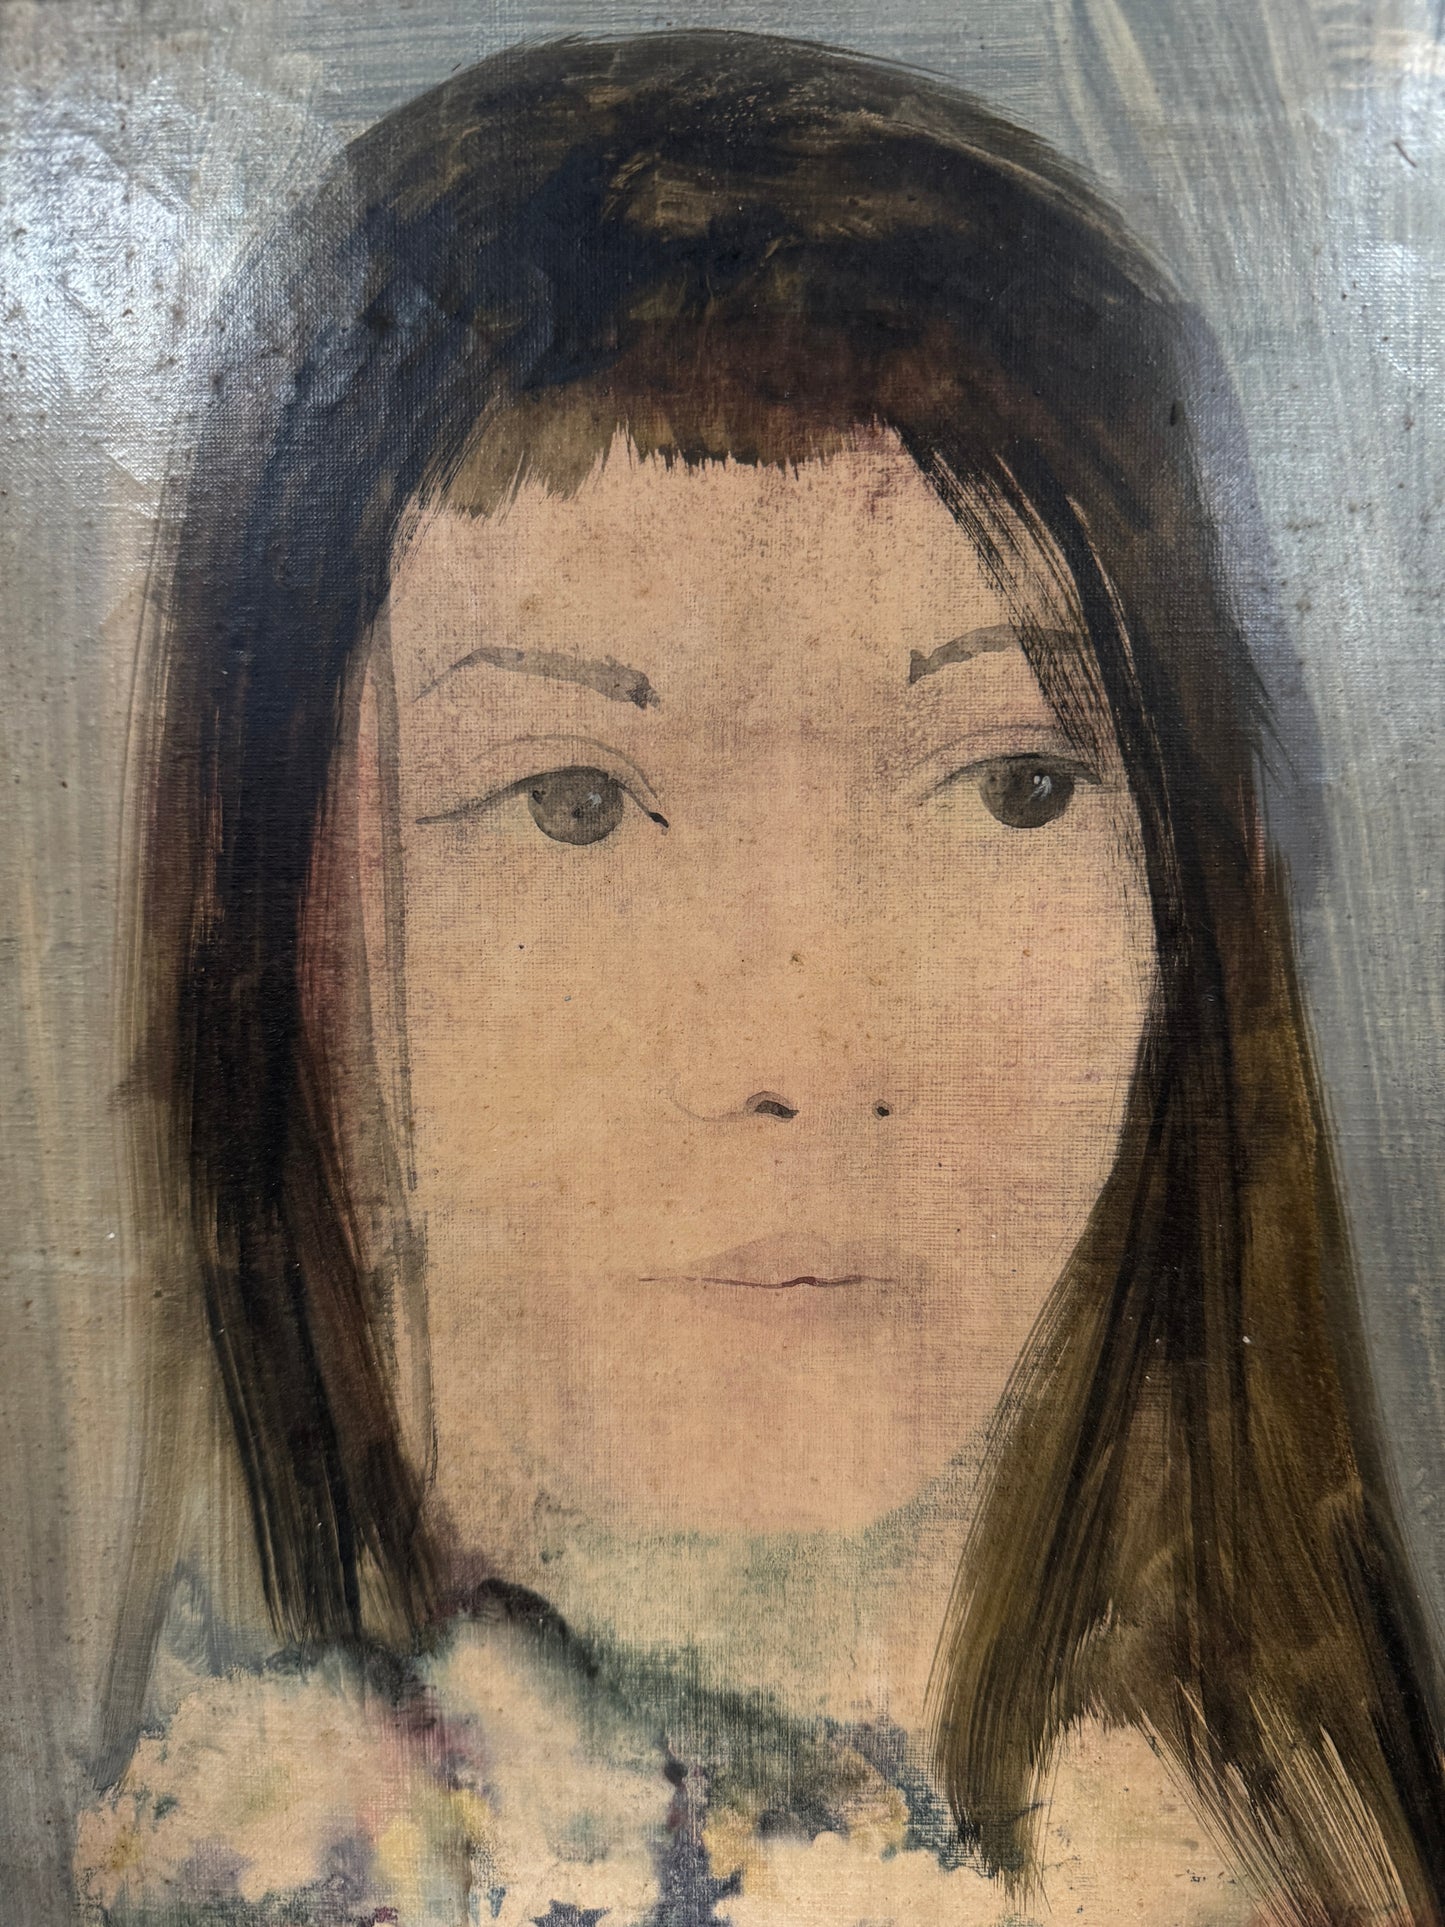 Juan CASTILLA, portrait 1970